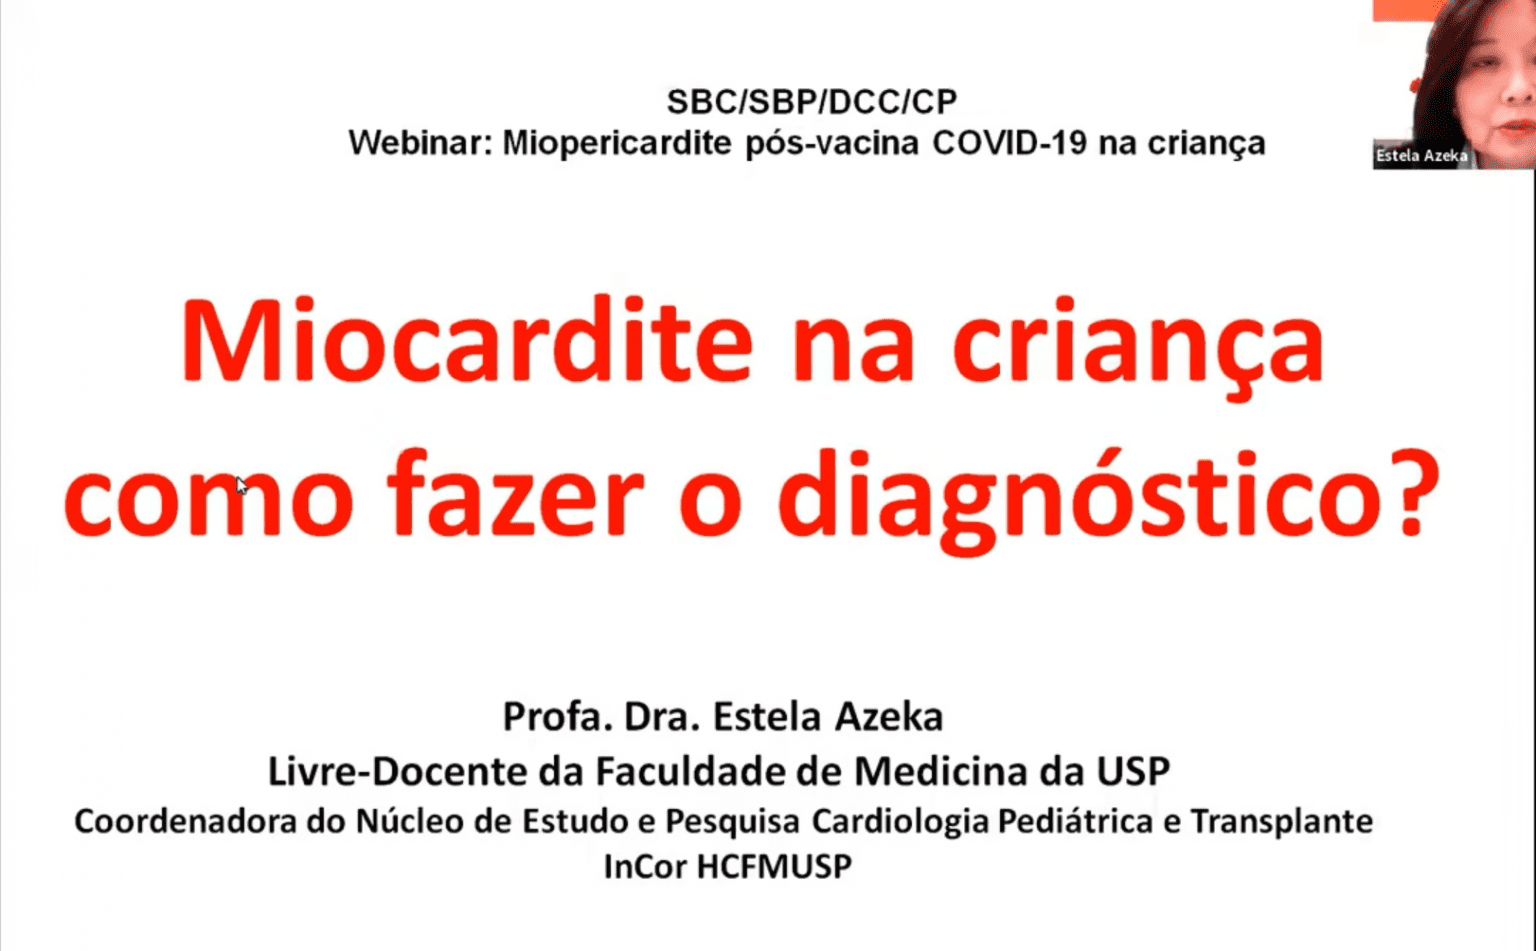 [Dcc Cp] Corte - Miocardite Na Criança: Como Fazer O Diagnóstico? - 20/10/2021